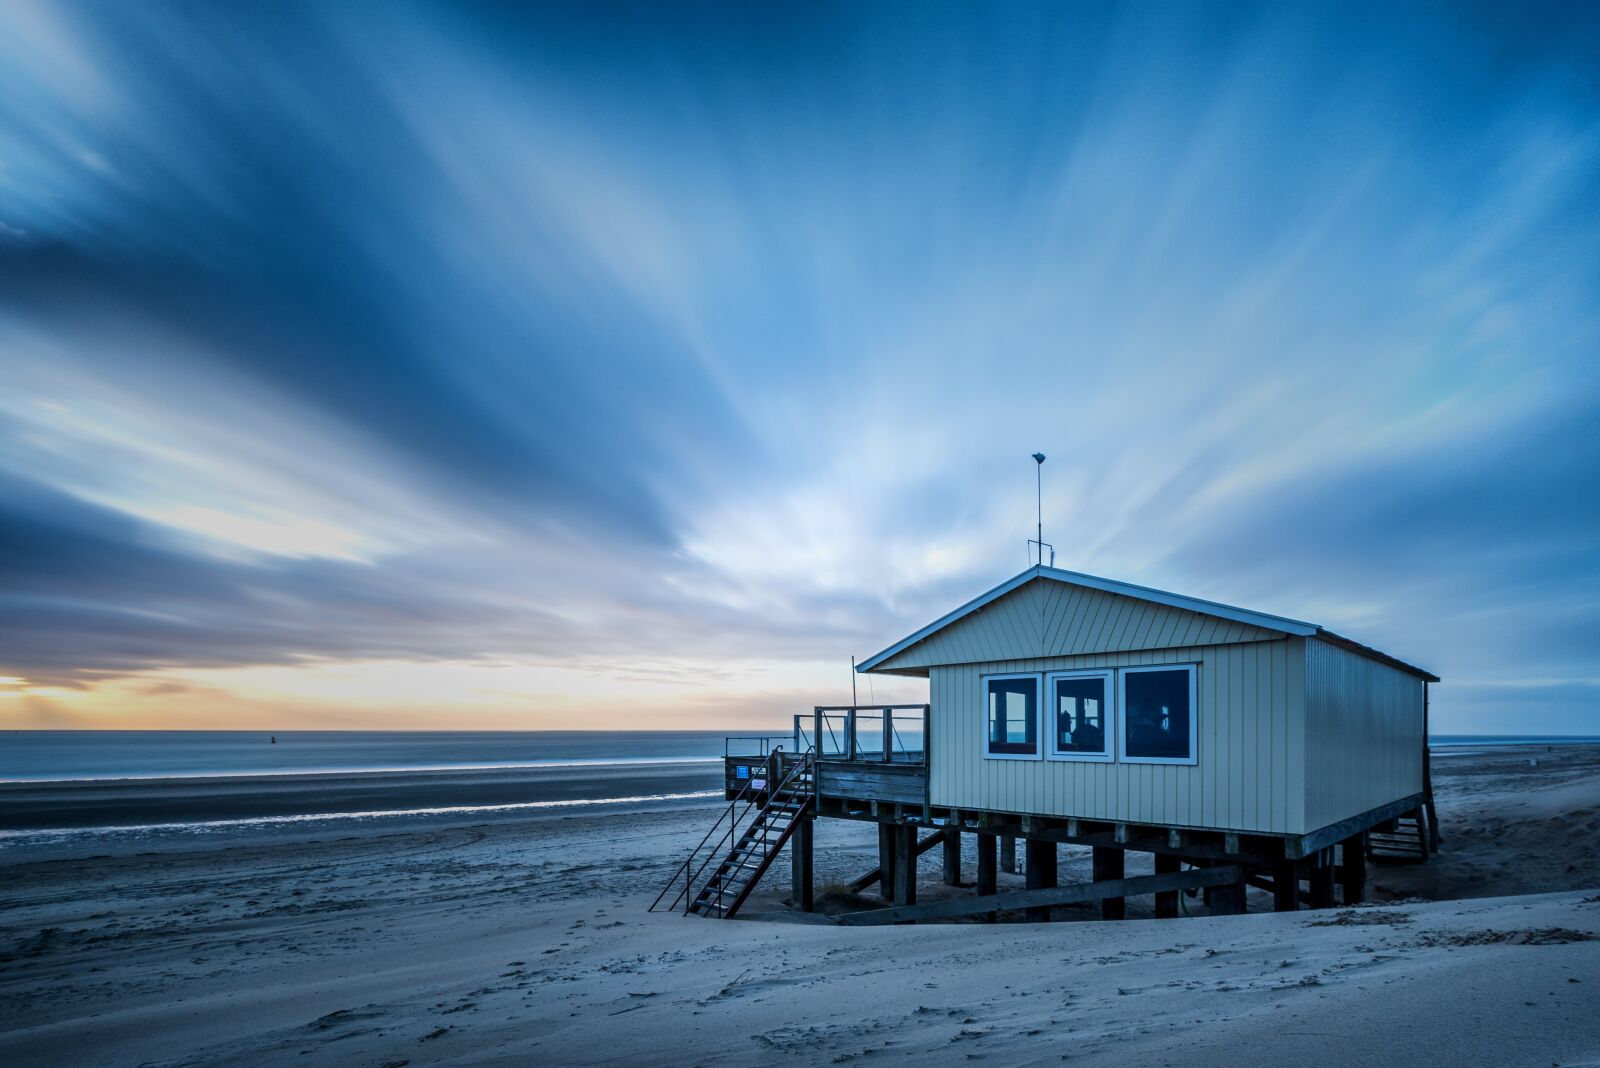 Nikon D750 sample photo. Beach house, sky, sea photography